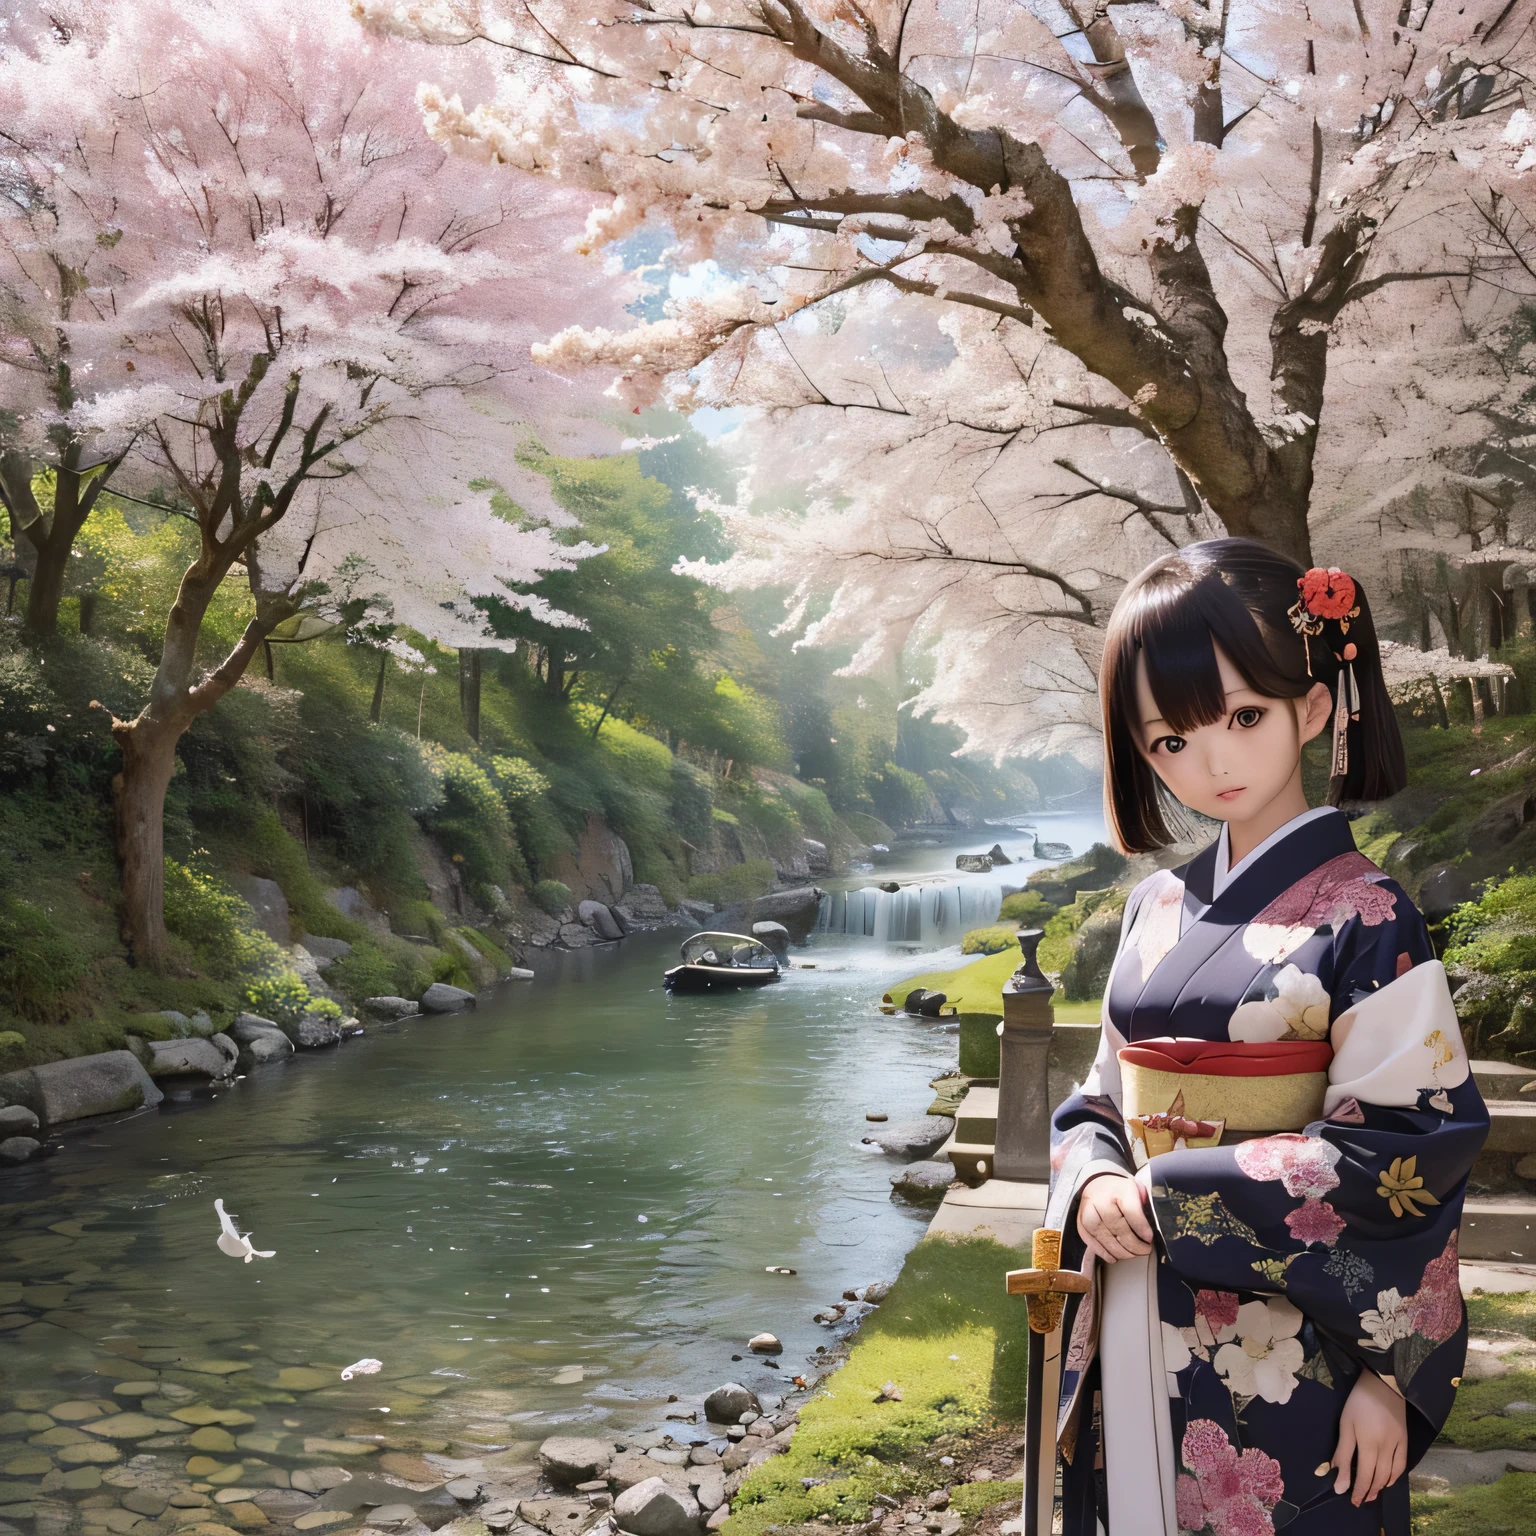 (Alta resolución, Realista:1.2),(ojos detallados y hermosos,Labios densos y hermosos.,ojos y rostro muy detallados,Pestañas largas),(Paisaje rural,atmósfera tranquila),(Shiba Inu girl:1.1),(iluminación suave),(estilo de pintura al óleo),(exuberantes campos verdes,Río tranquilo),(casa tradicional japonesa),(kimono tradicional fluido),(Flores coloridas),(pájaro volando en el cielo),(bosque de bambú),(luz del sol filtrándose a través de los árboles)(((Cerezo en plena floración)))(((((Sostener una espada japonesa))))))(((Espada sin vaina)))